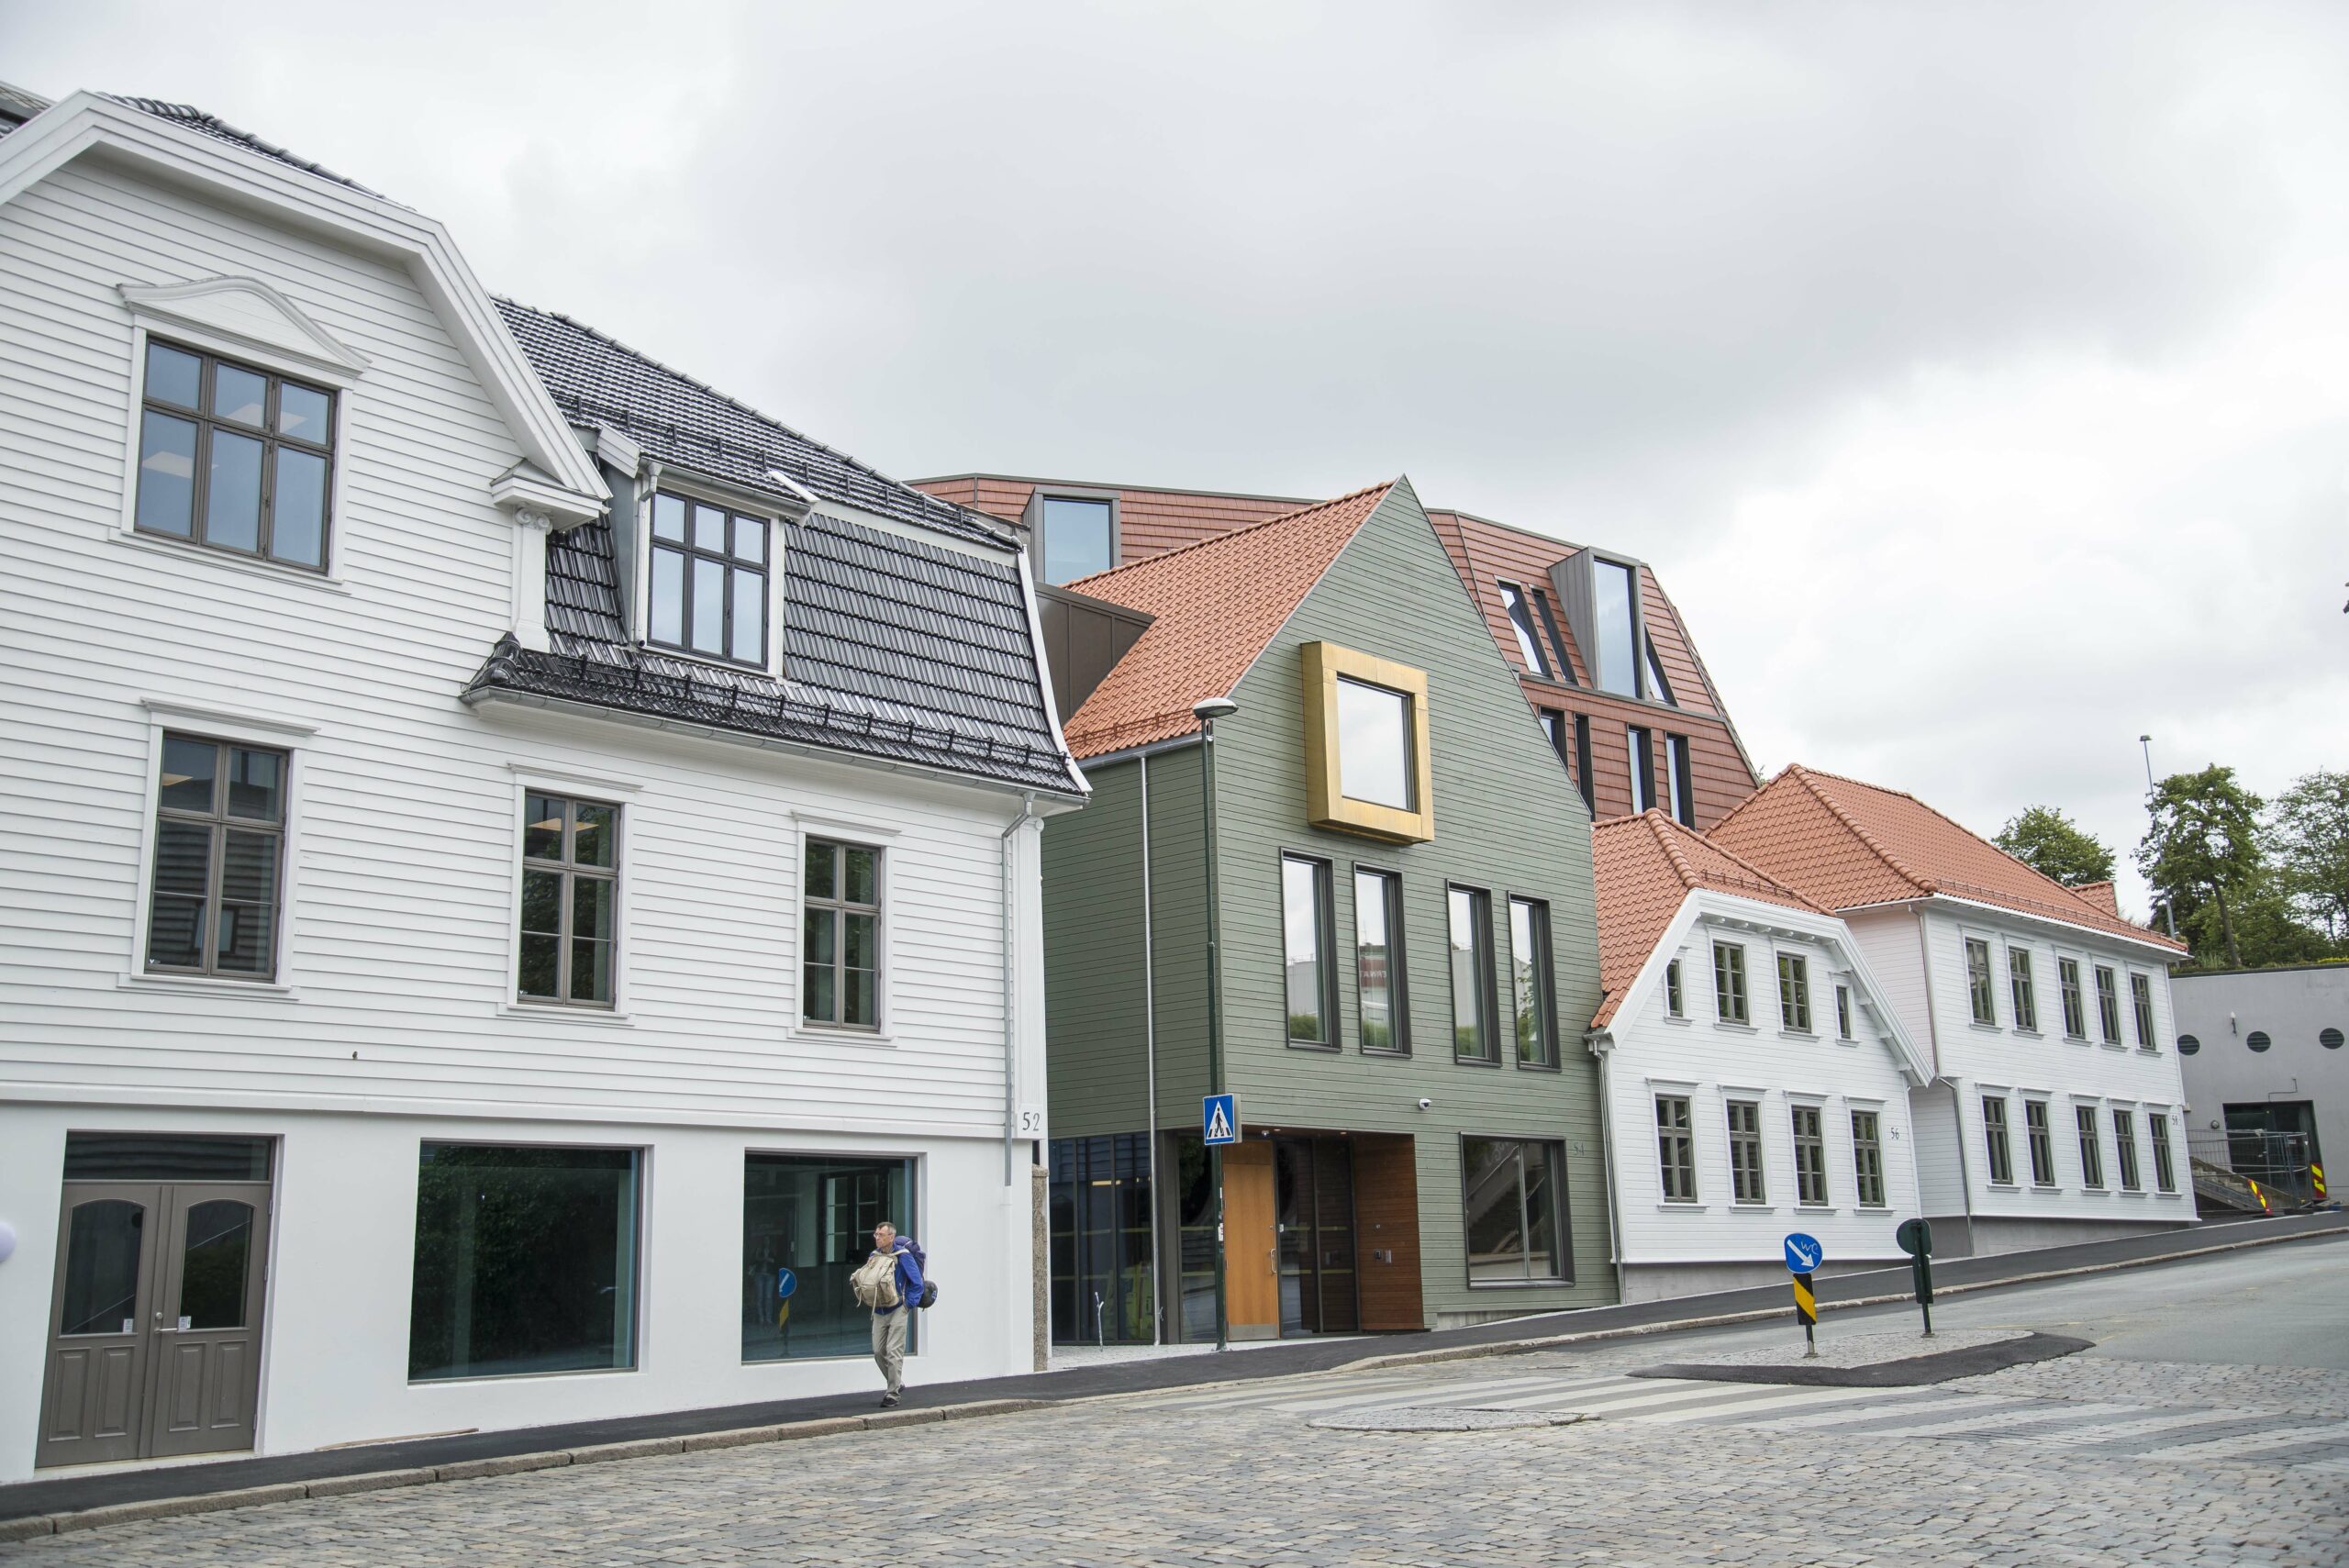 Industri Energis lokaler i Kongsgata i Stavanger er nå klare for bruk. Foto: Atle Espen Helgesen